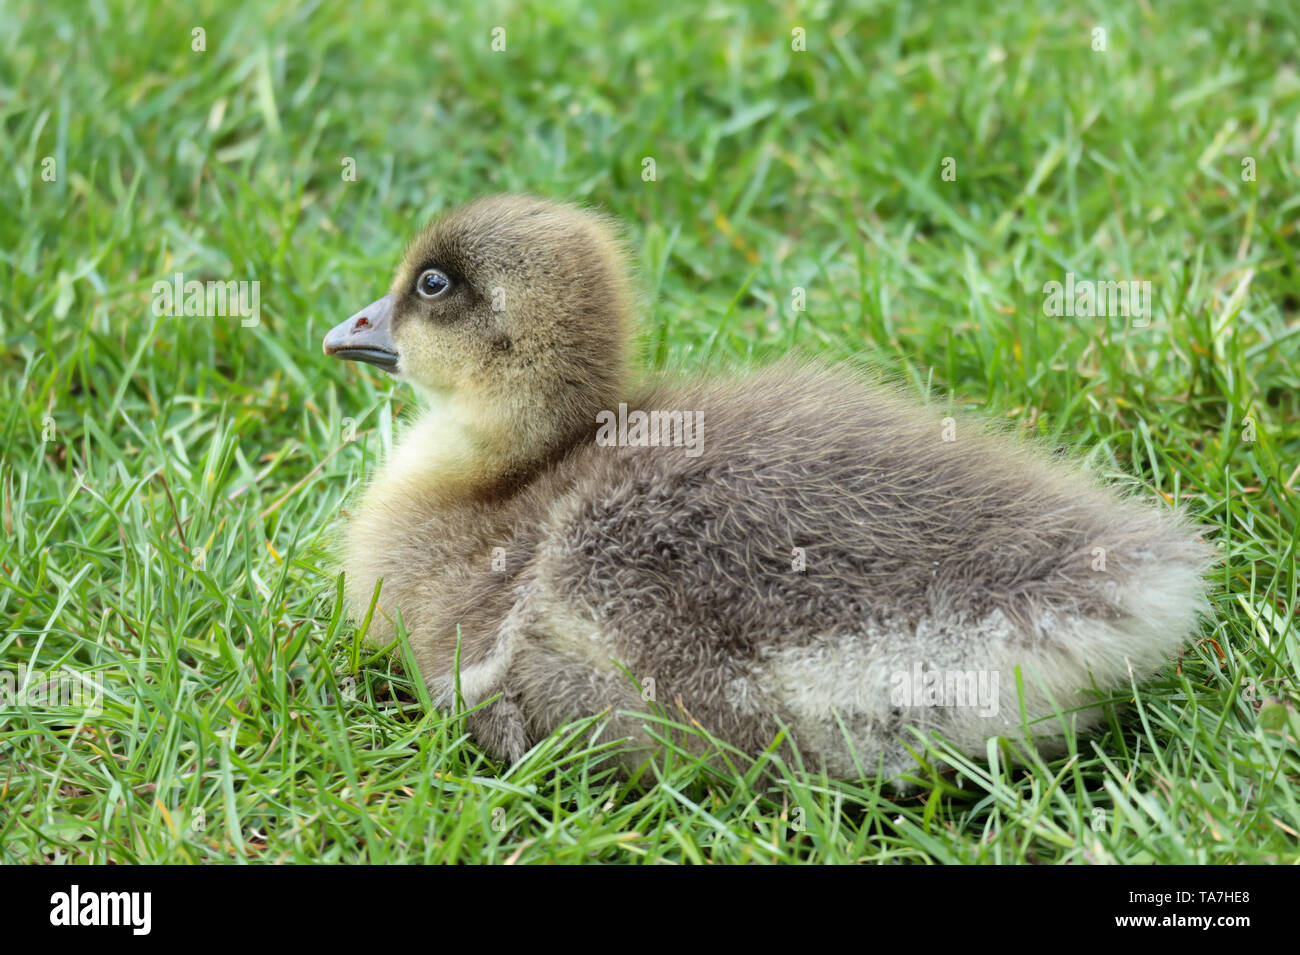 Un Graylag Goose's gosling descansando en el césped, uno de muchos que nacieron en el Parque Sandall, Doncaster, Reino Unido en mayo de 2019 Foto de stock